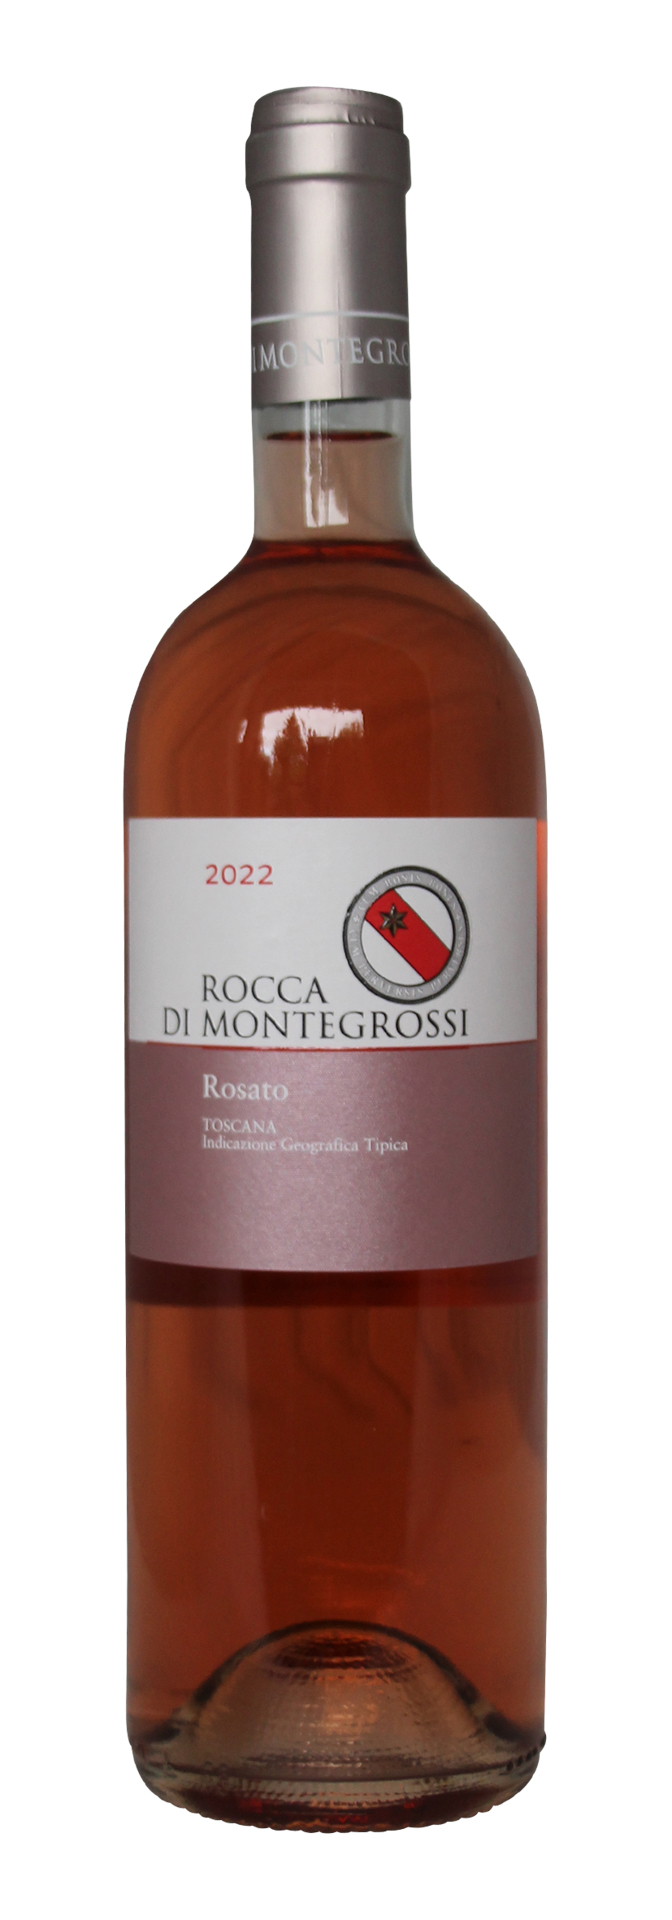 Toscana IGT Rosato Rocca Di Montegrossi 2022